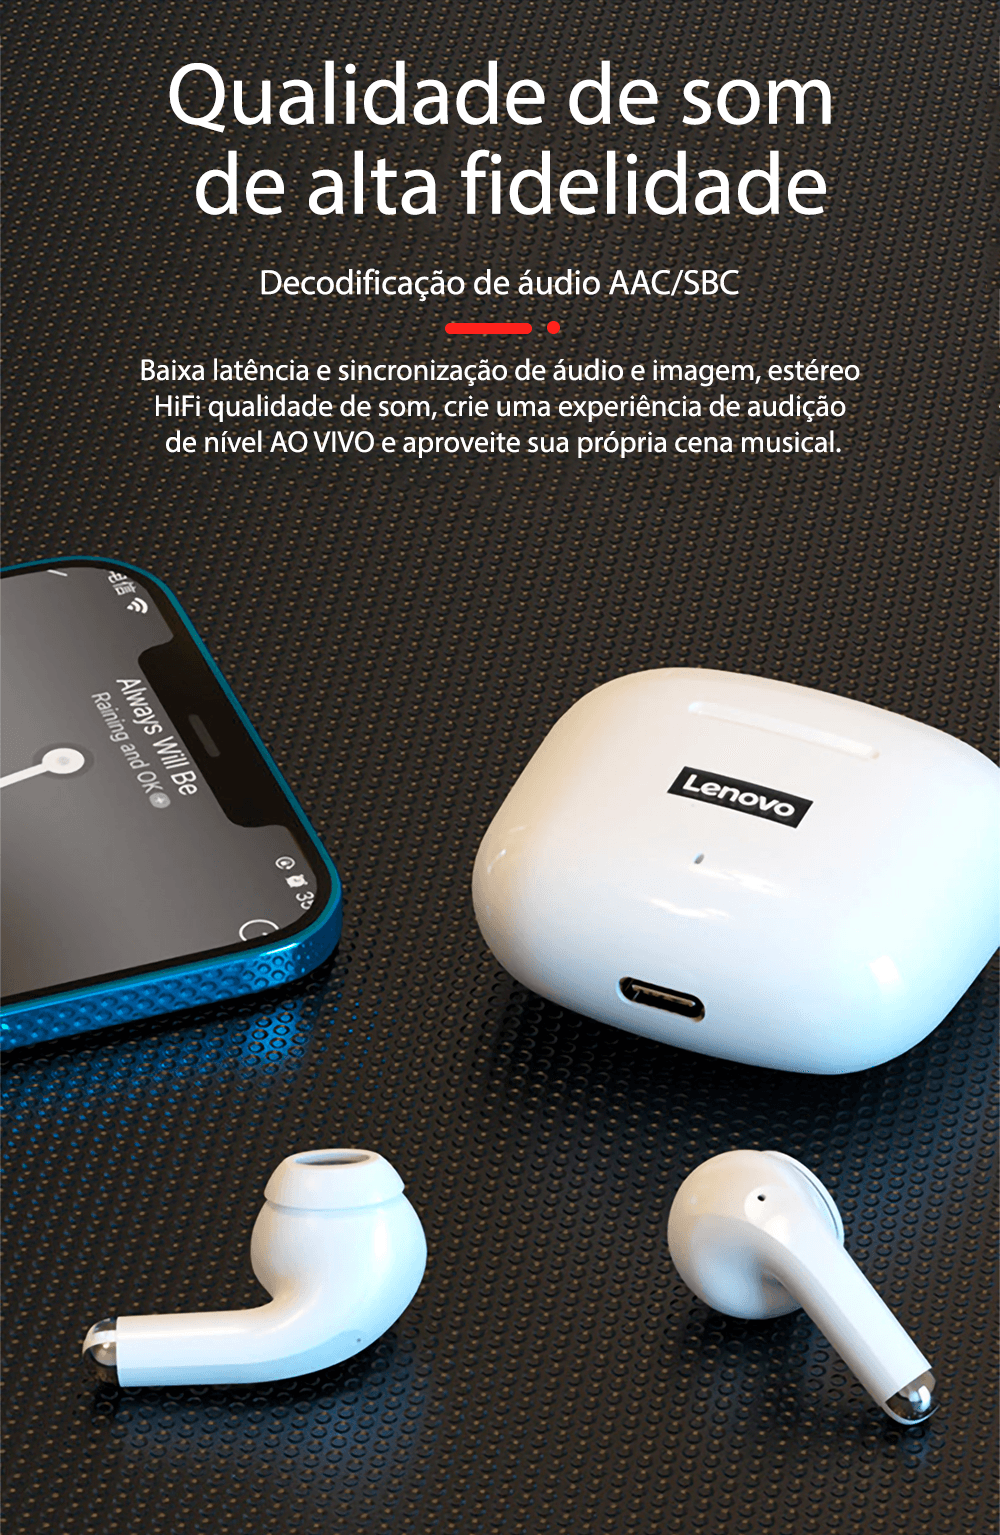 Fone de ouvido sem fio TWS via bluetooth Lenovo LP40 Pro + bolsa de proteção e kit de limpeza - Rede Canan